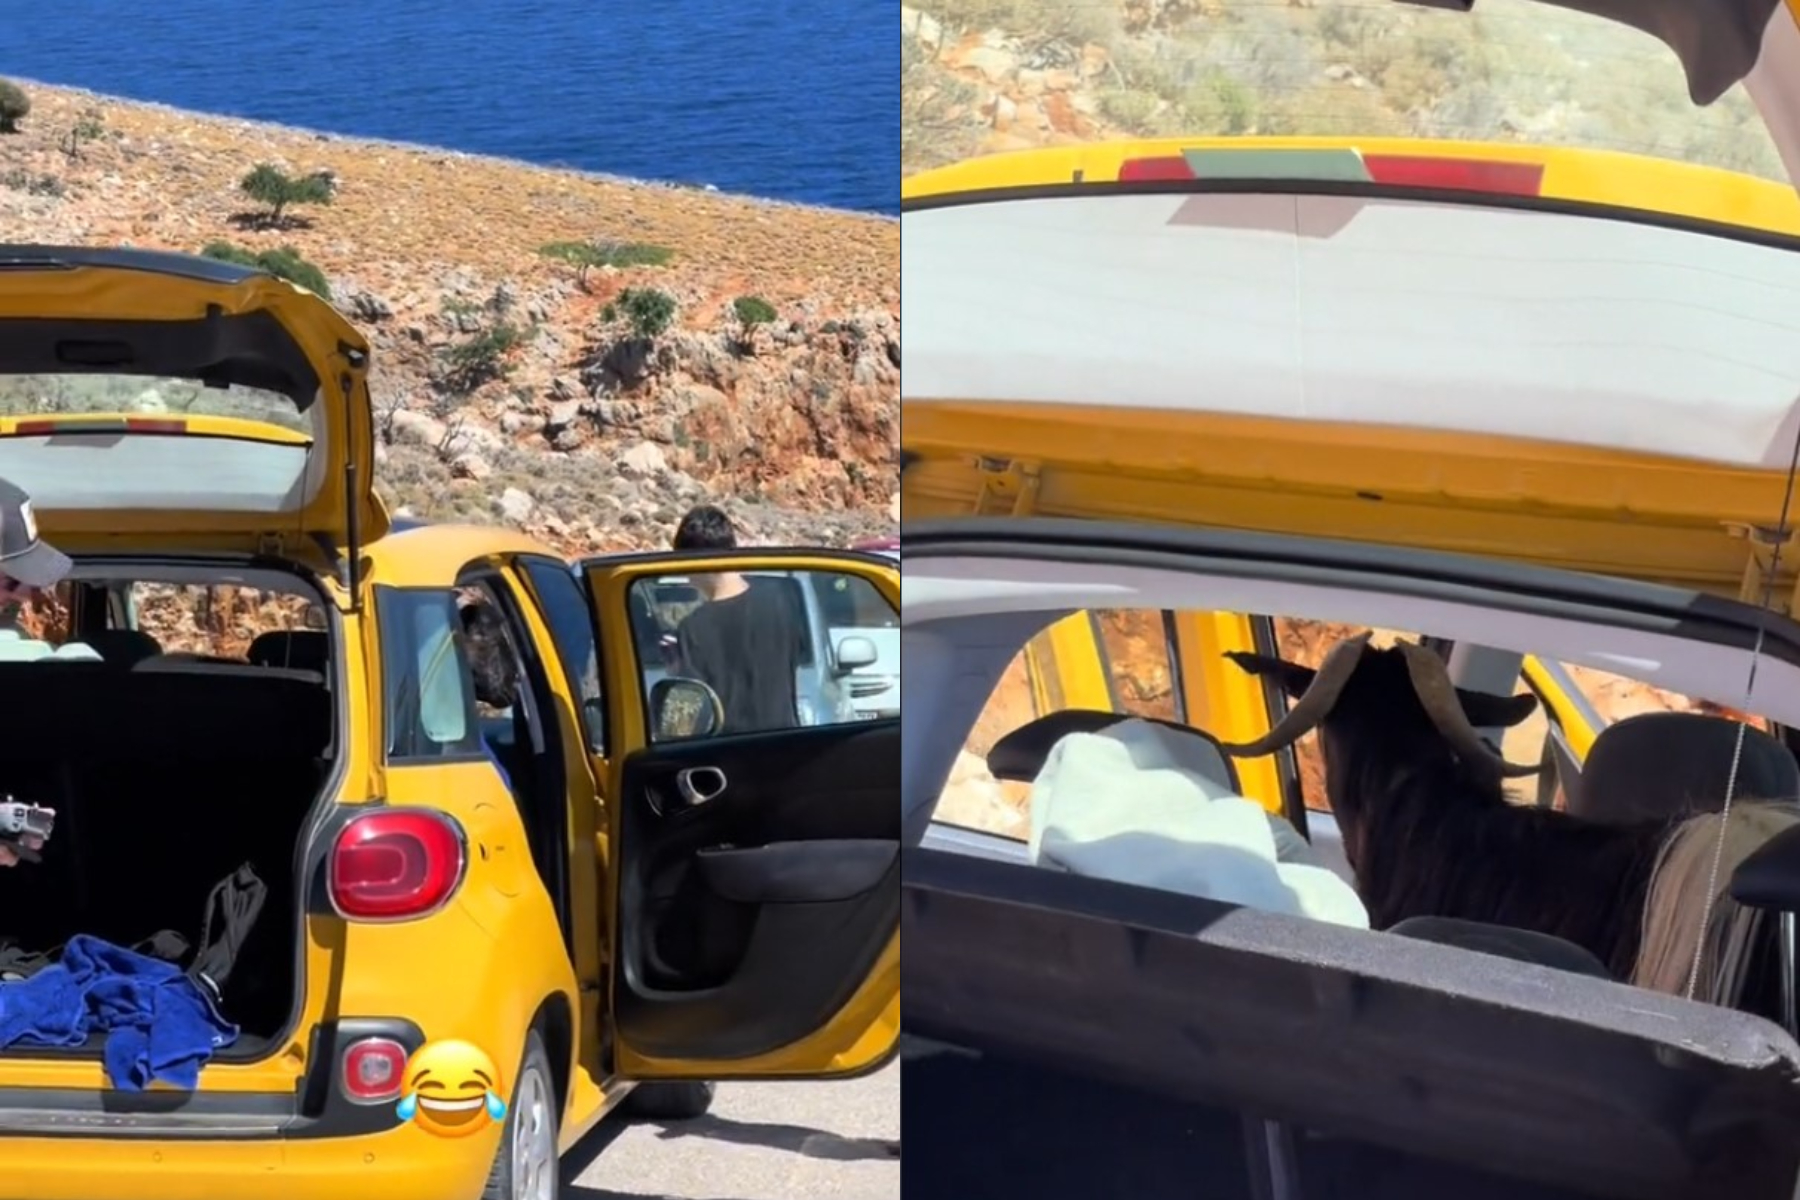 Τράγος κατσικώθηκε στο αμάξι τουριστών στα Χανιά - «Καταλαβαίνεις ότι είσαι διακοπές στην Ελλάδα, όταν...»